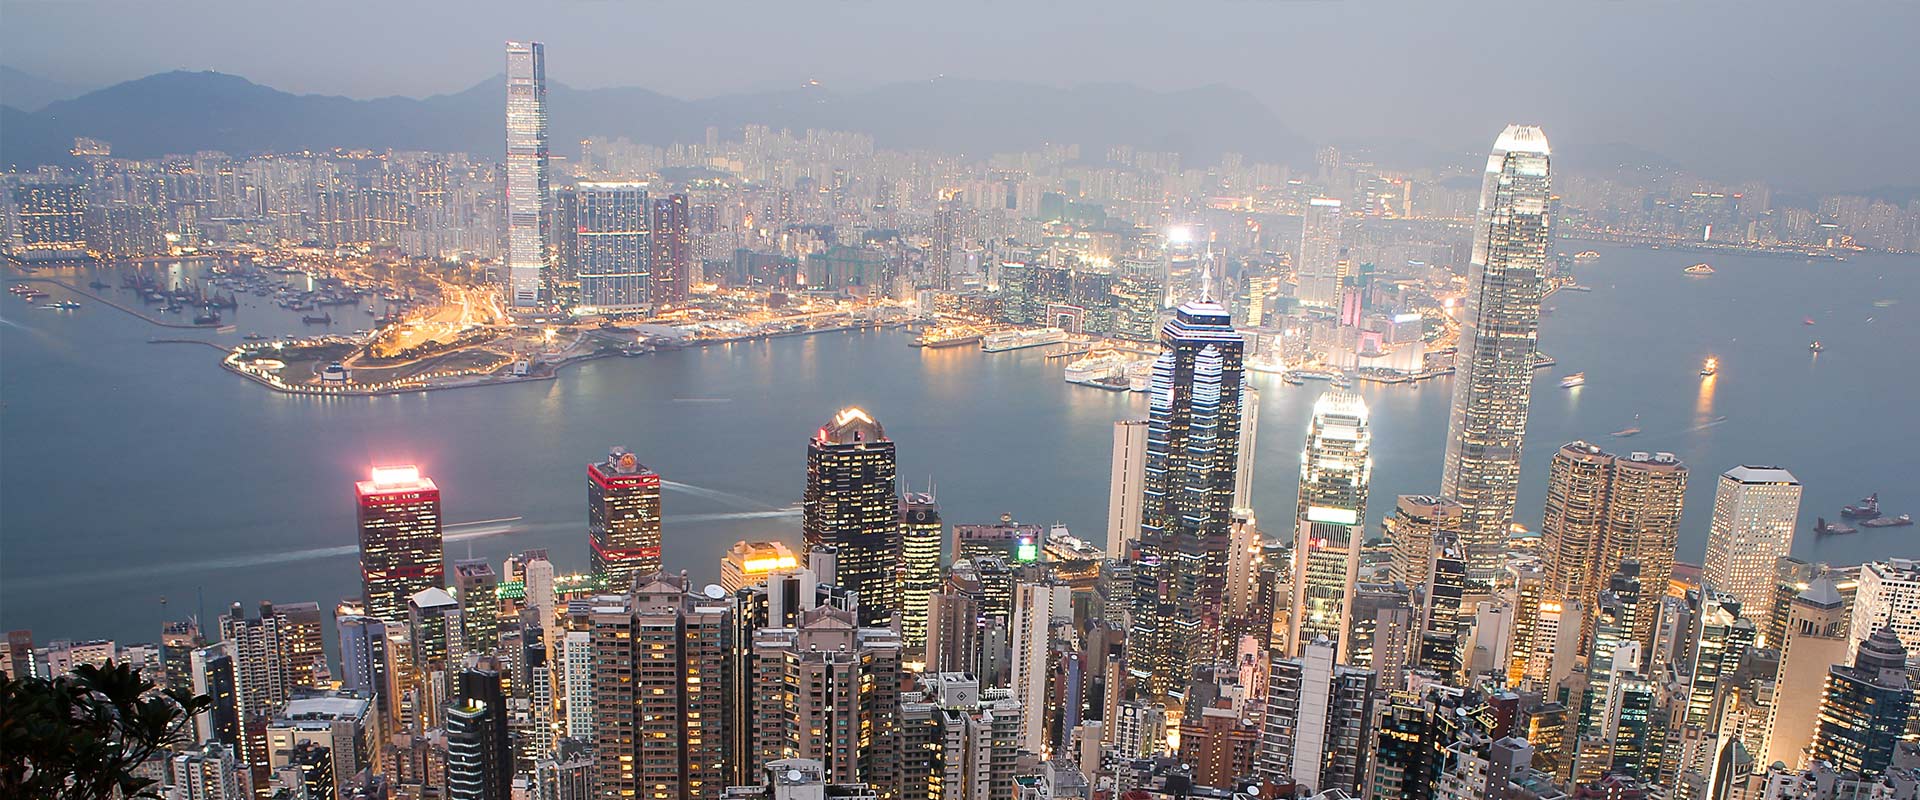 Aerial View of Hong Kong at Night